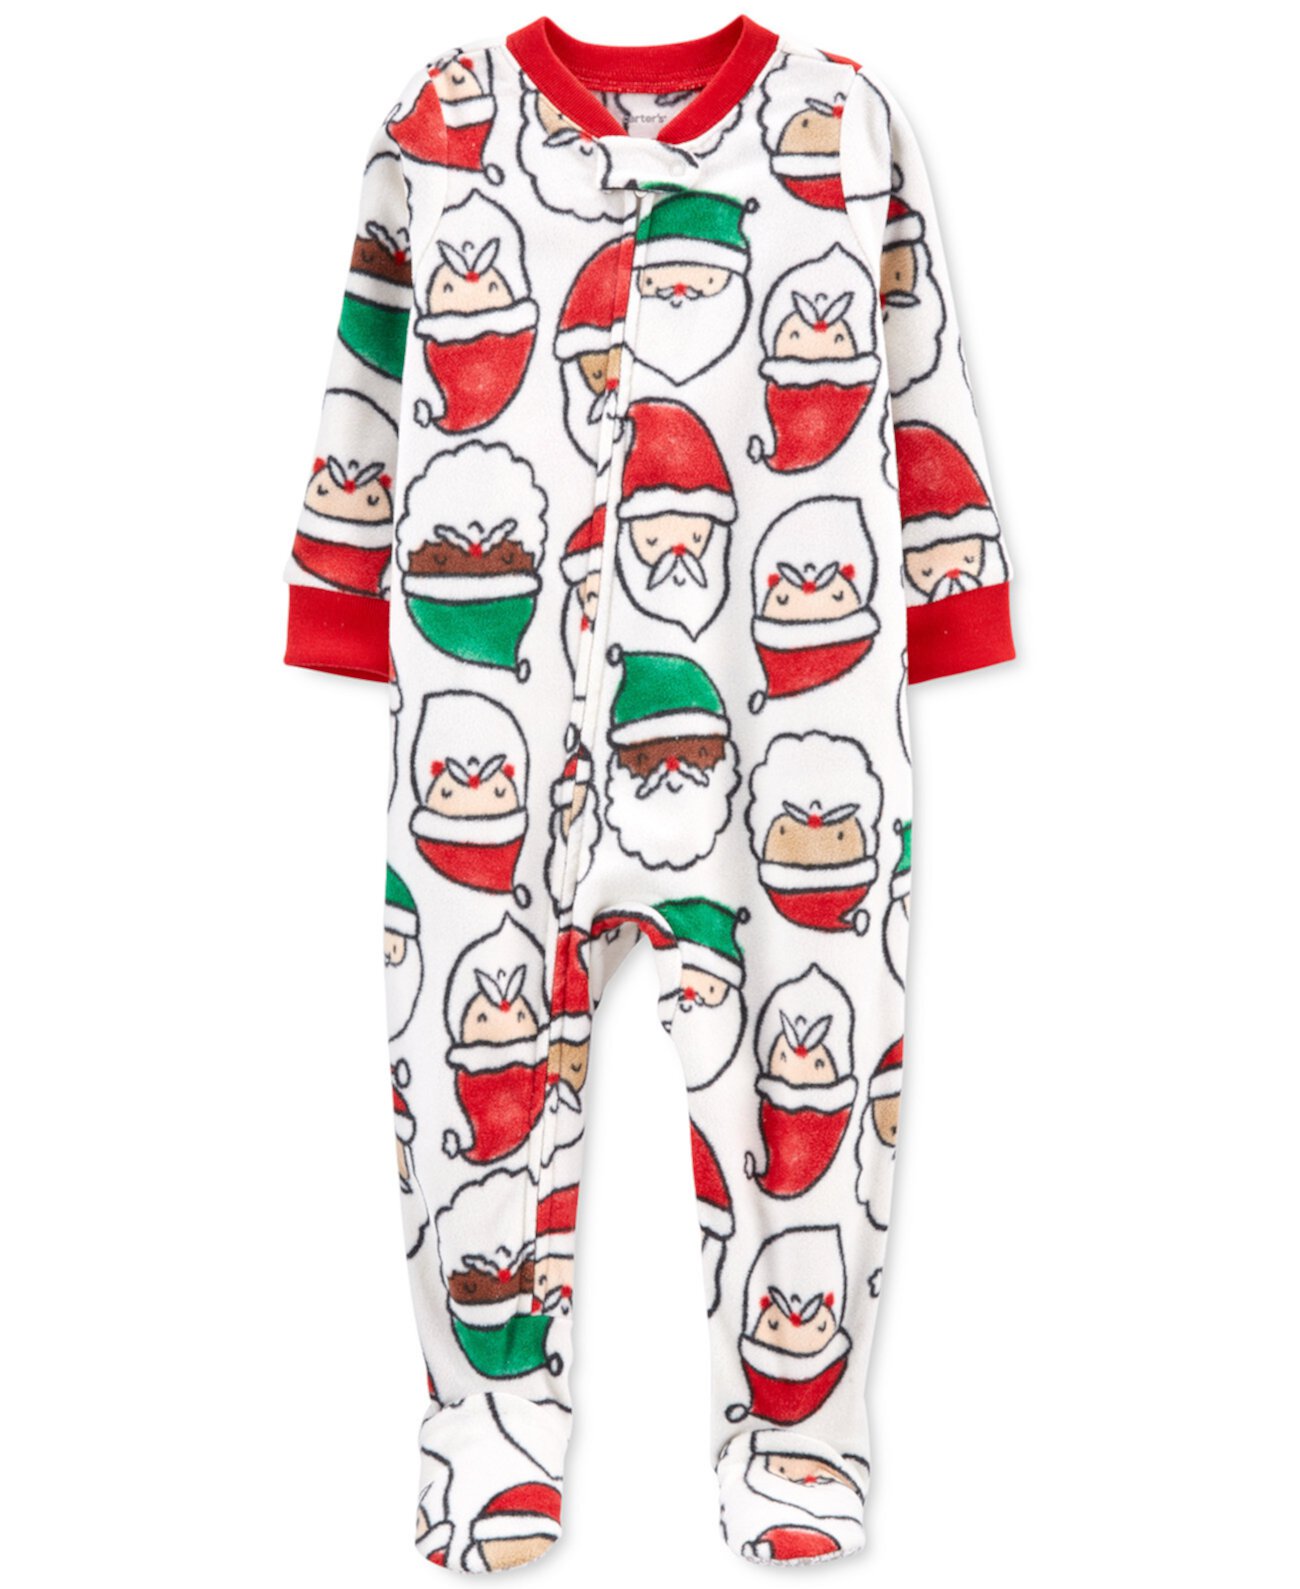 Цельнокроеная флисовая пижама с принтом Санта-Клауса для маленьких мальчиков и девочек Carter's